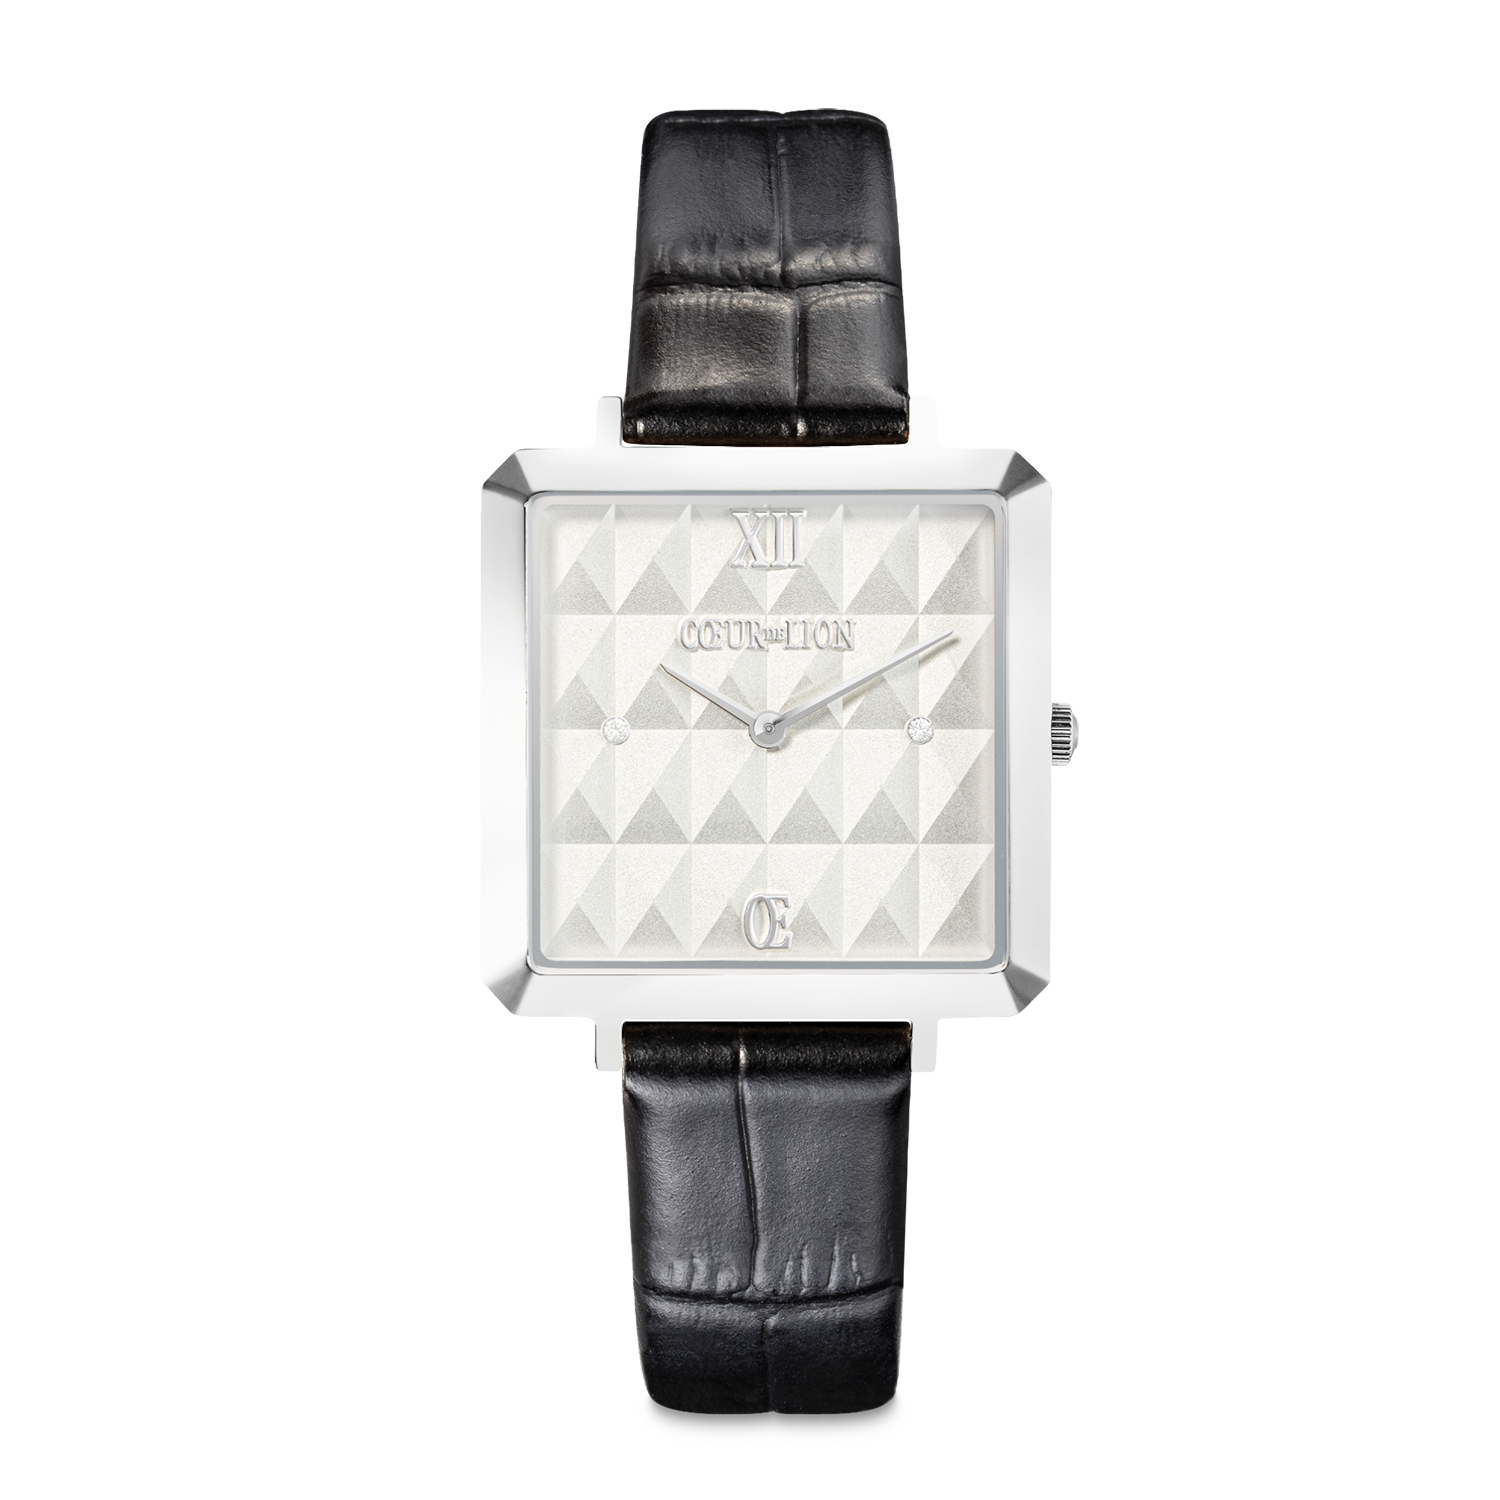 Coffret Cadeau Montre Iconic Cube Spikes Noir & Bracelet Princess Shape Mix Noir-Blanc